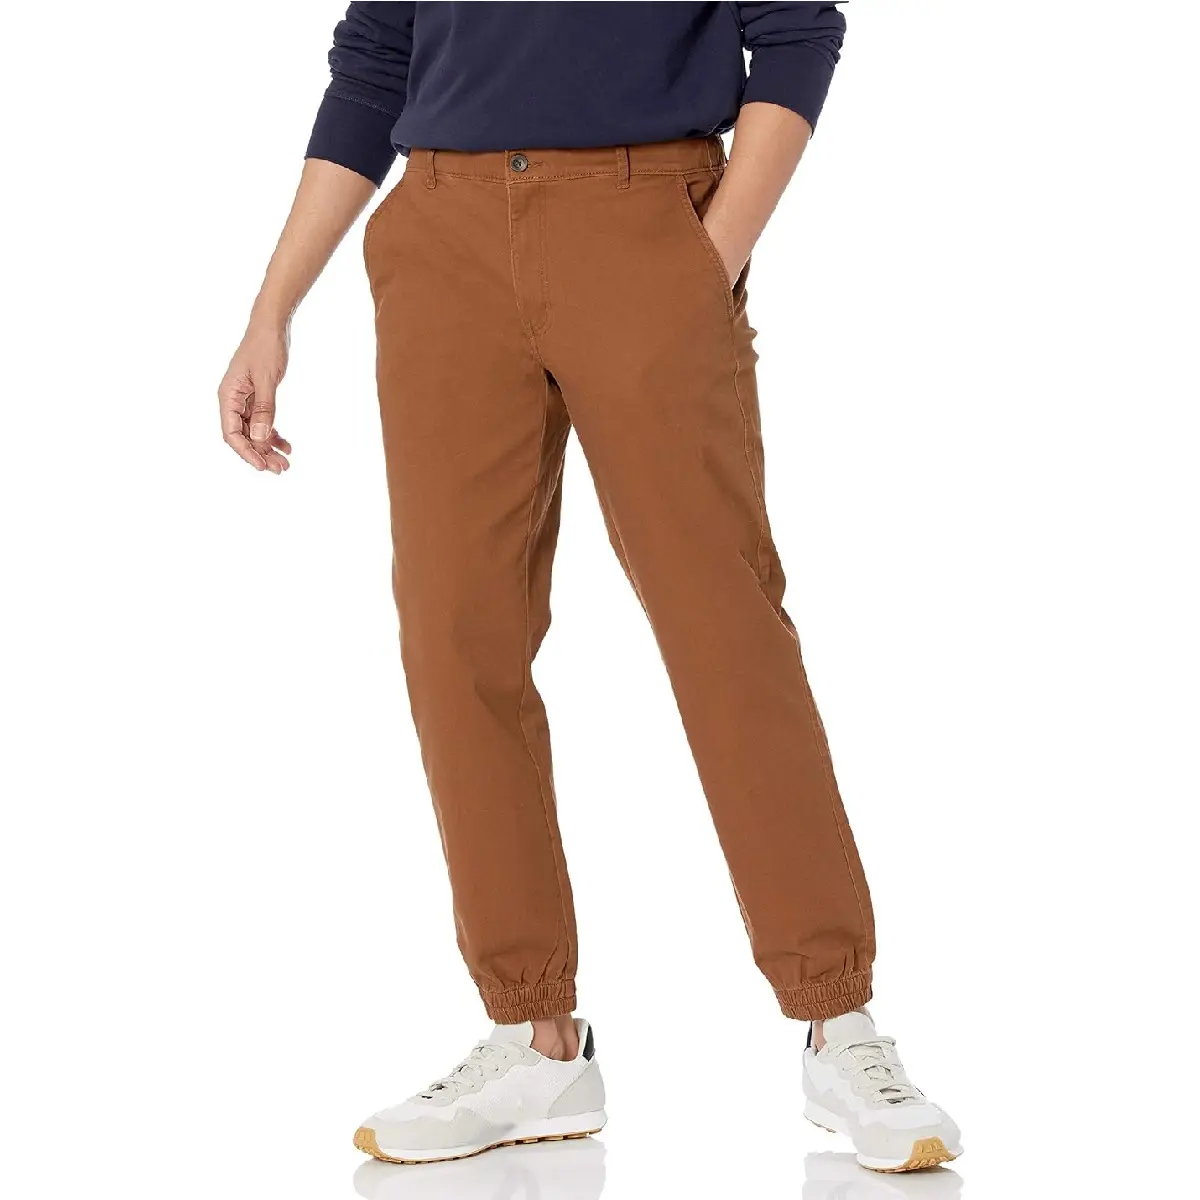 กางเกงแฟชั่นสำหรับผู้ชายผ้าคอตตอนทอลายทแยงสีทึบทรงสลิมฟิตลำลองมีเชือกผูกจากโรงงานบังคลาเทศ